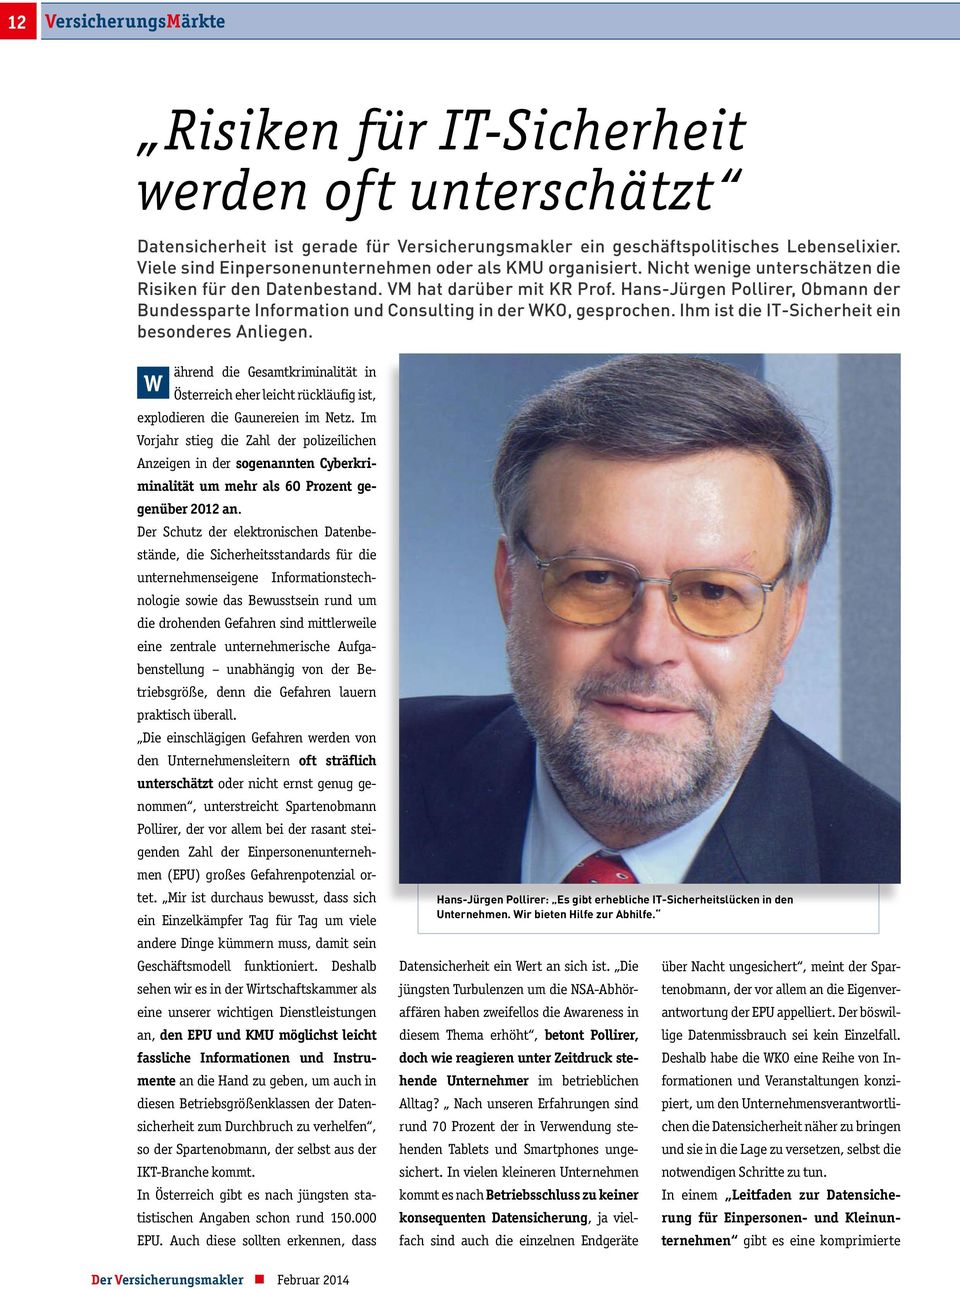 Hans-Jürgen Pollirer, Obmann der Bundessparte Information und Consulting in der WKO, gesprochen. Ihm ist die IT-Sicherheit ein besonderes Anliegen.